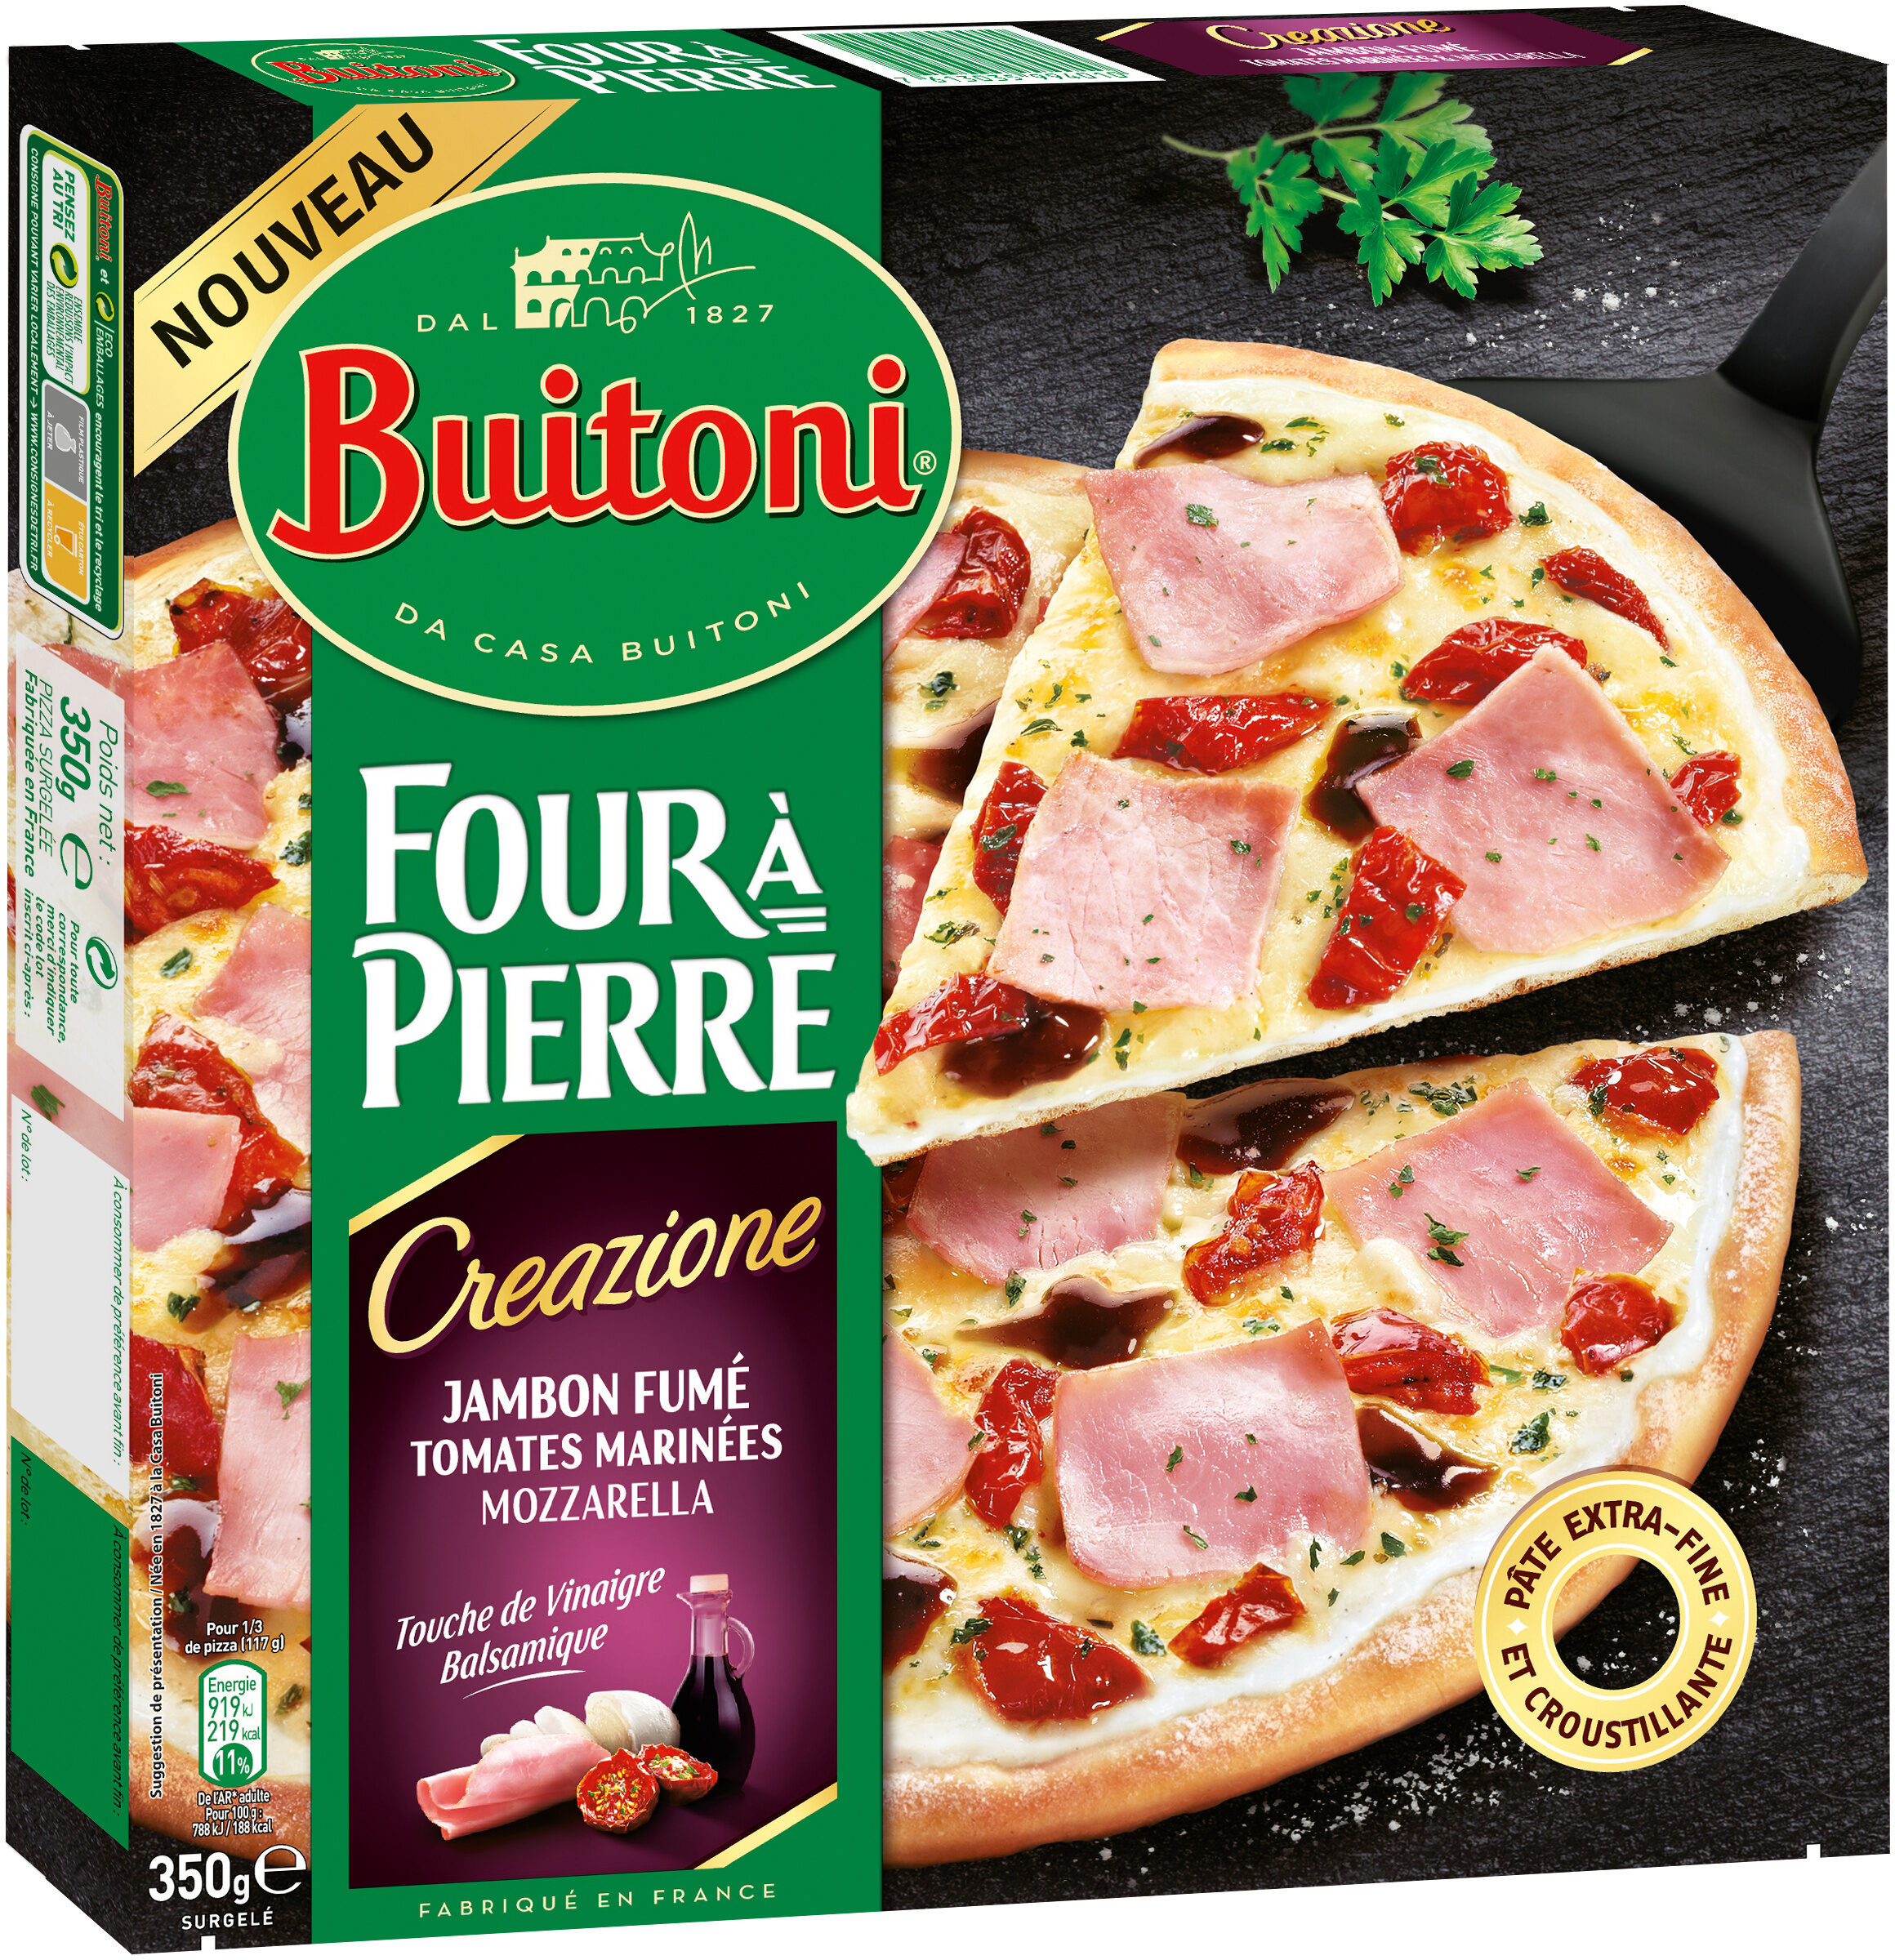 BUITONI FOUR A PIERRE CREAZIONE pizza surgelée Jambon Fumé 350g - Product - fr